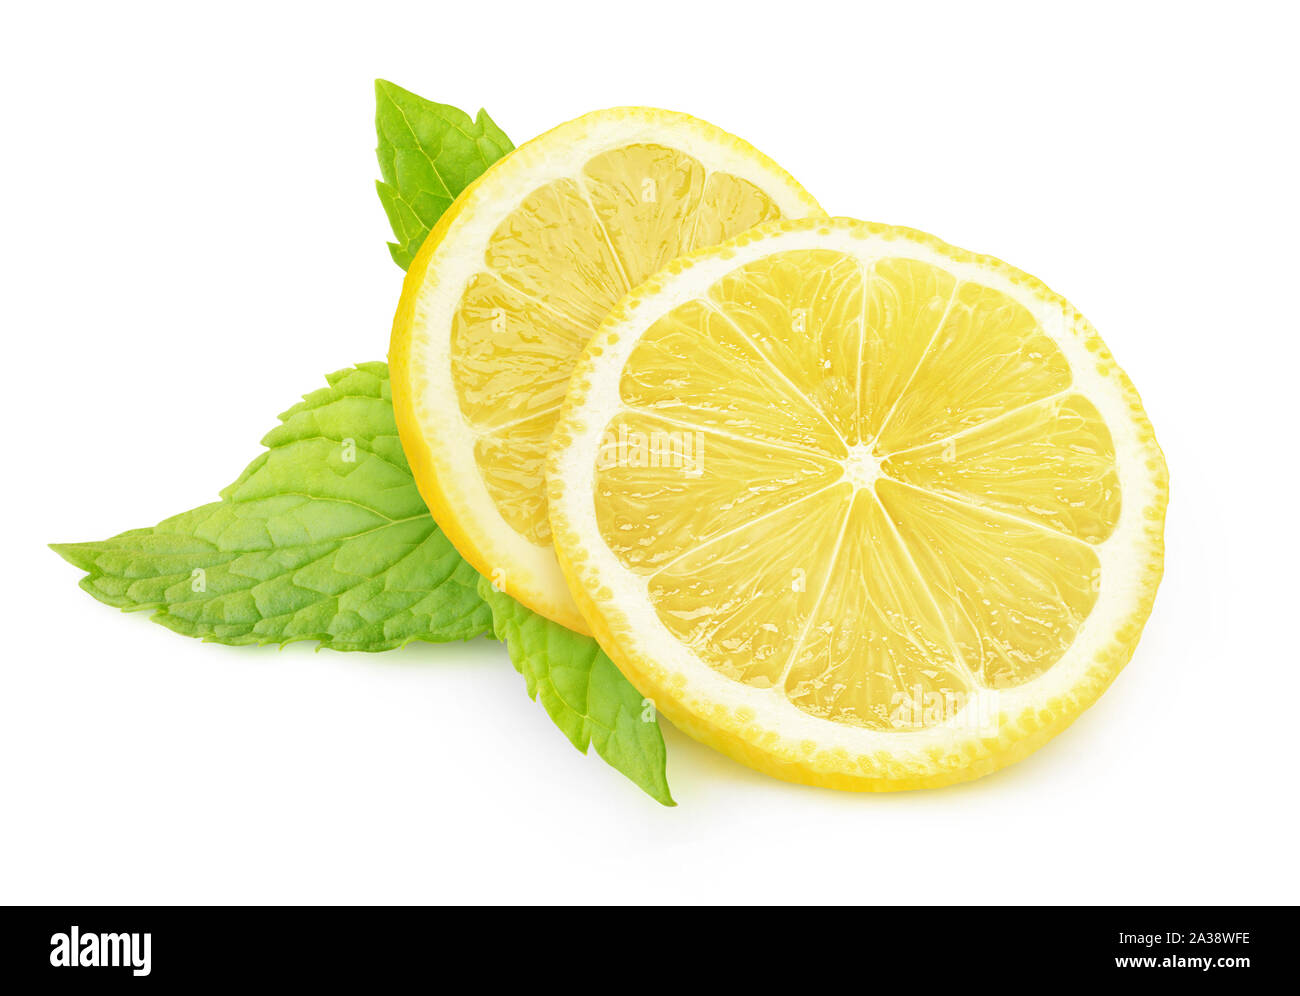 Isolierte Zitrone und Minze. Zwei Stücke von Zitrone Obst und frische Minze auf weißem Hintergrund mit Freistellungspfad isoliert Stockfoto